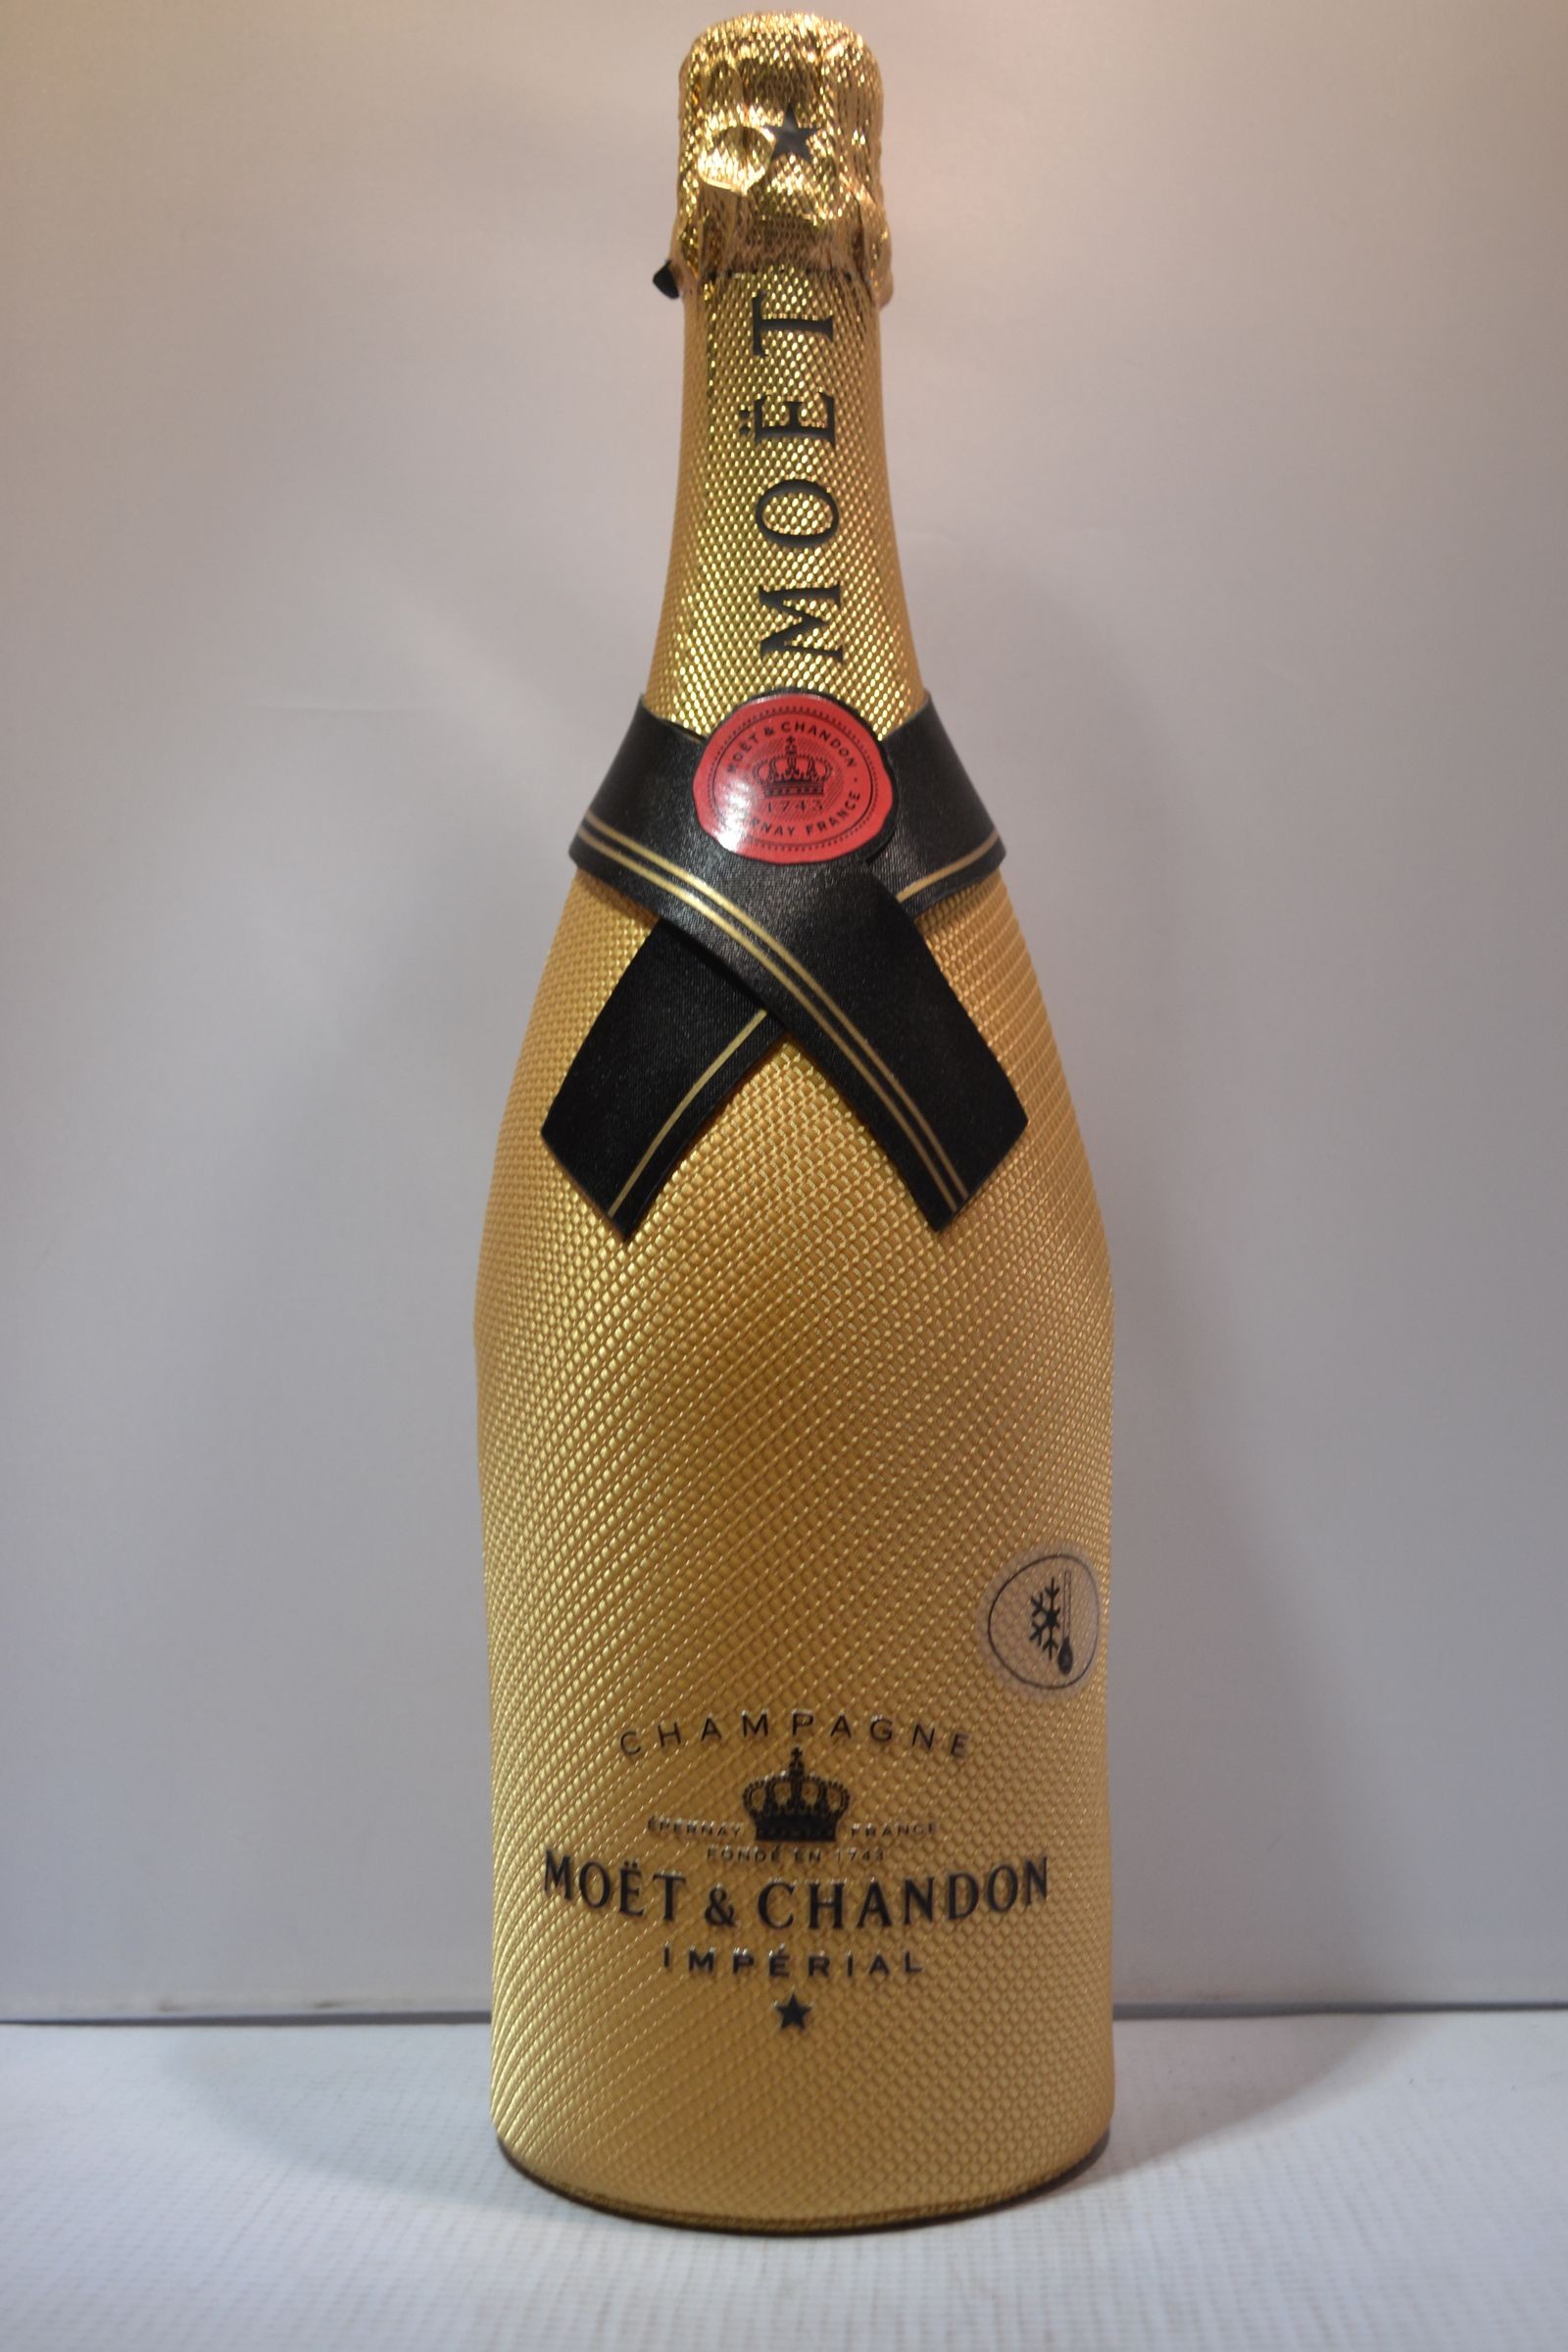 N.V. Moët & Chandon Imperial Gold Bottle Limited Edition Brut